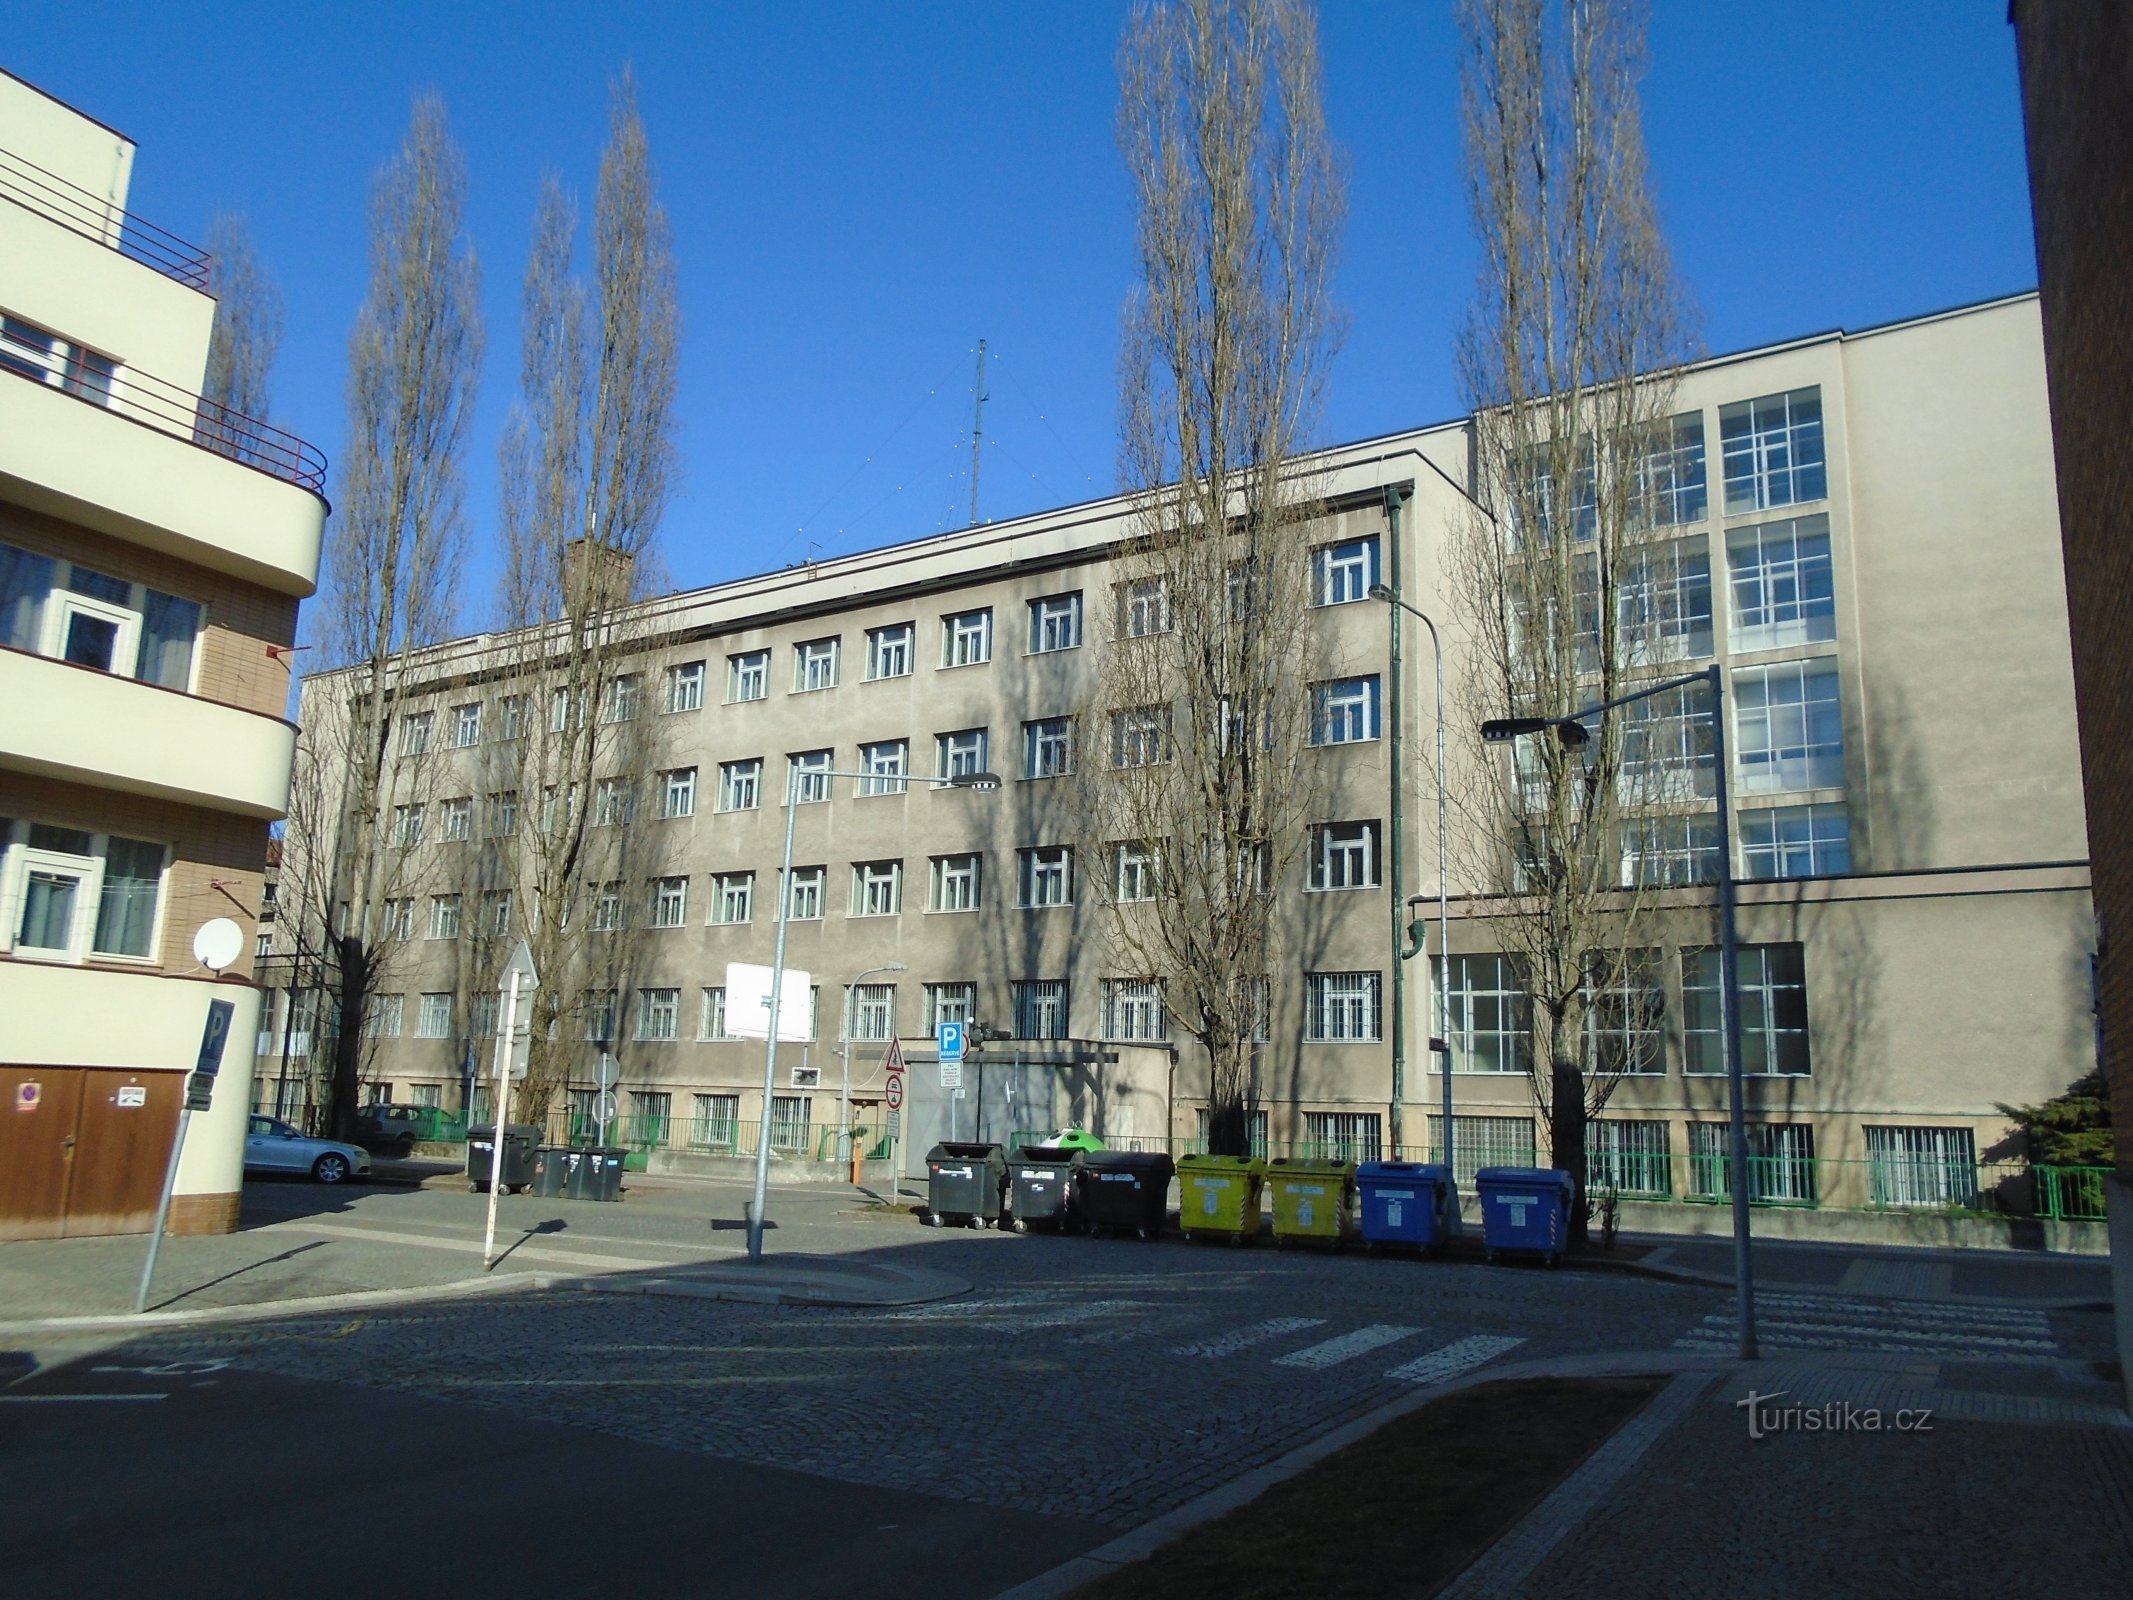 Ulrichovo náměstí nr. 810 (Hradec Králové, 25.2.2018)